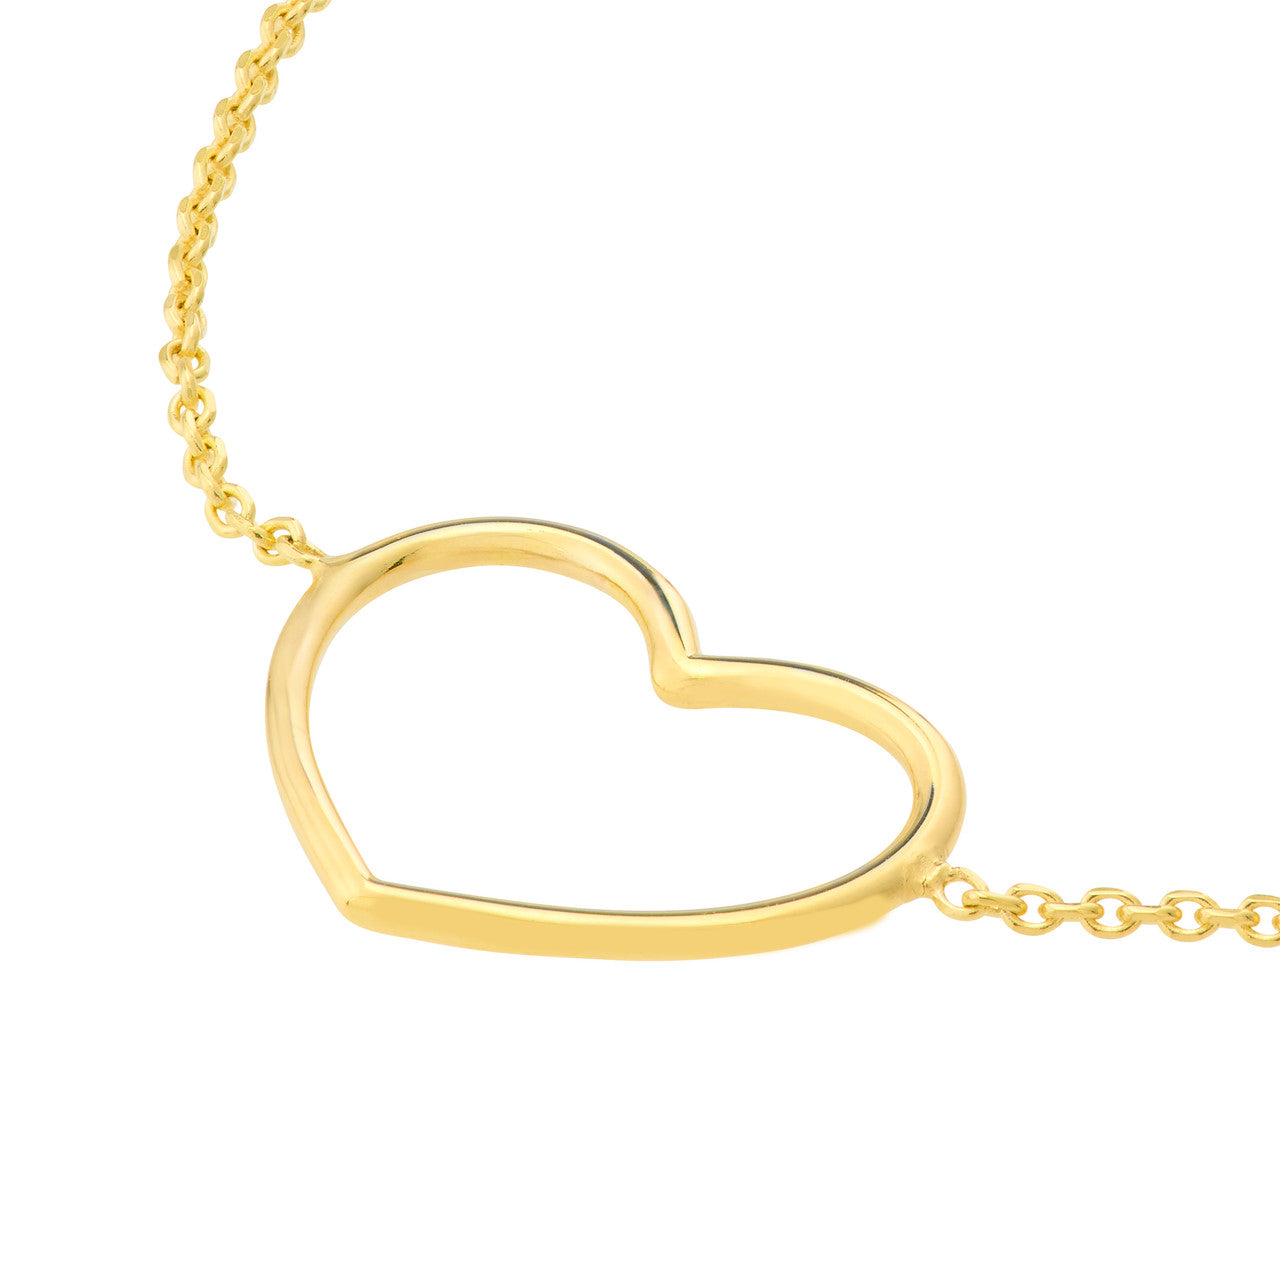 14k Yellow Gold Open Heart Bracelet